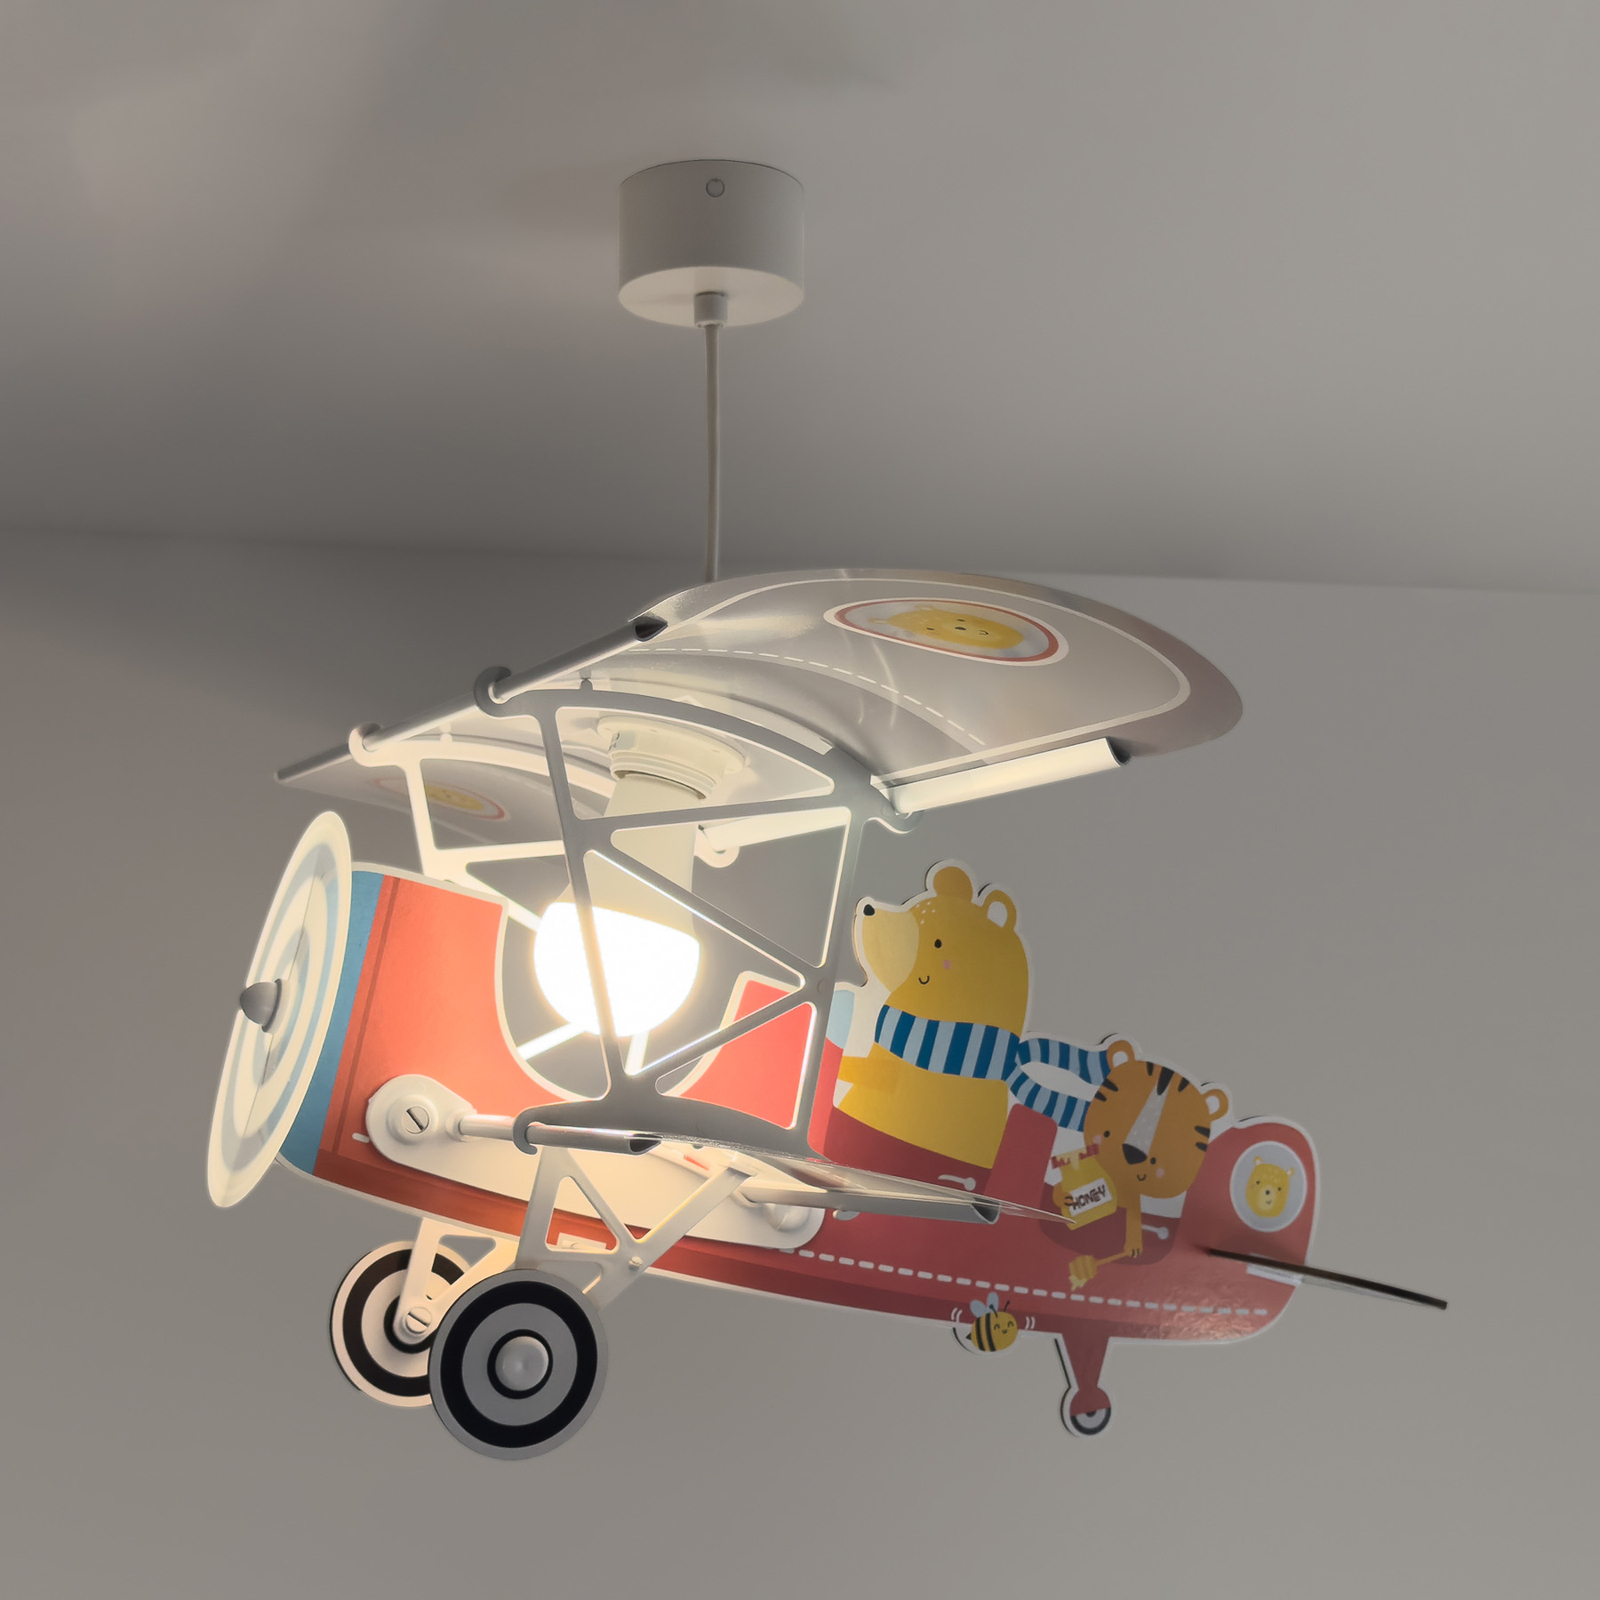 Dalber hanglamp Teddy Plane, kleurrijk, hout/kunststof